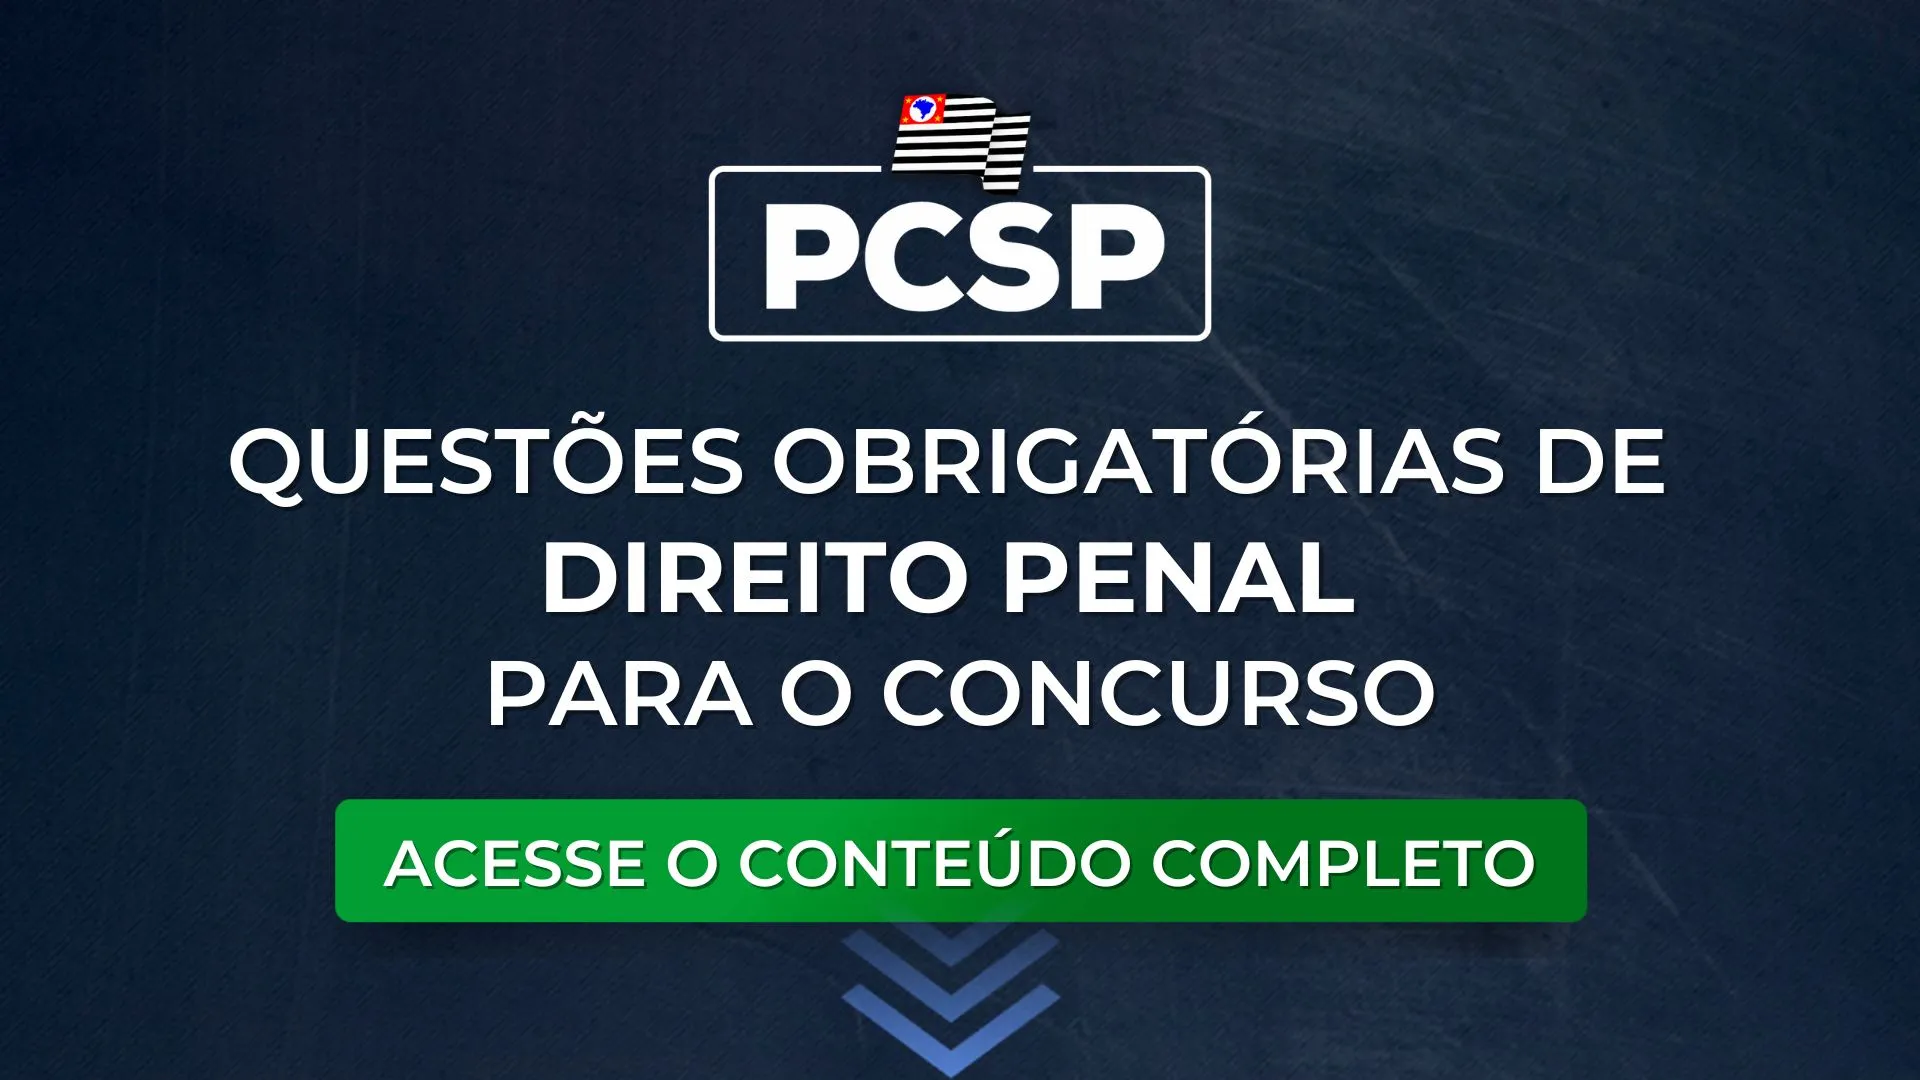 PCSP: Questões obrigatórias de Direito Penal para o concurso